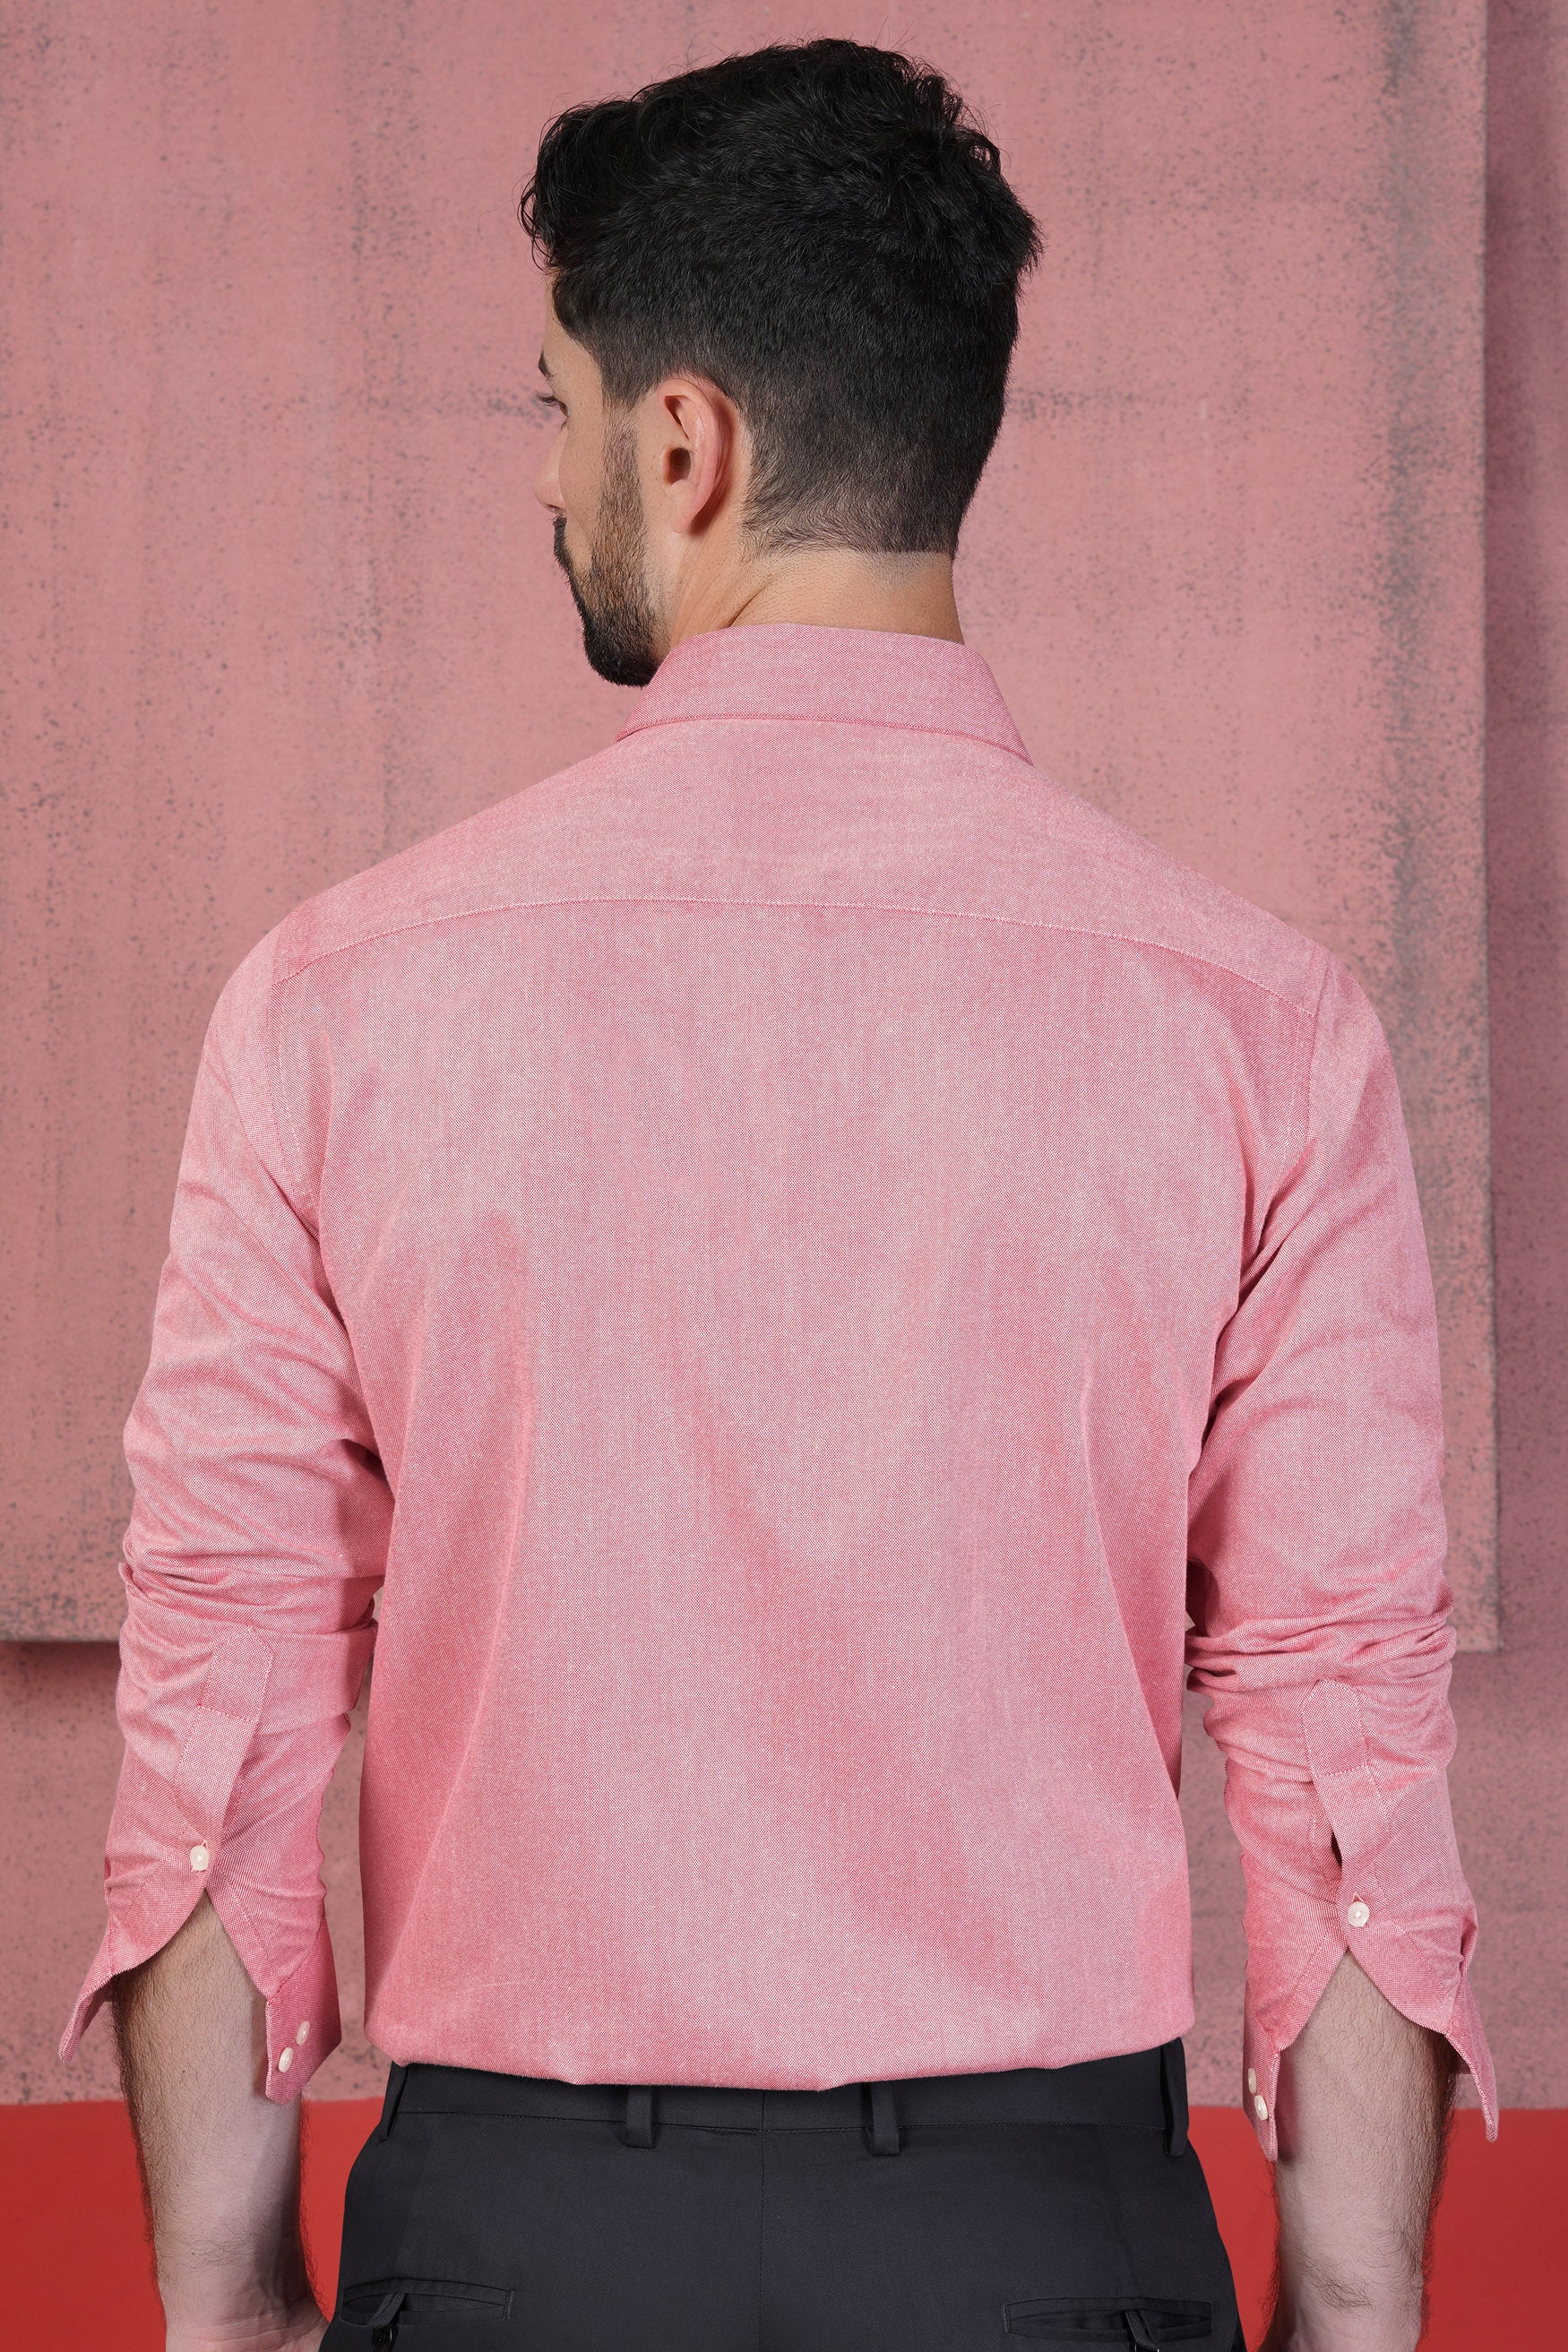 Wewak Pink Royal Oxford Shirt